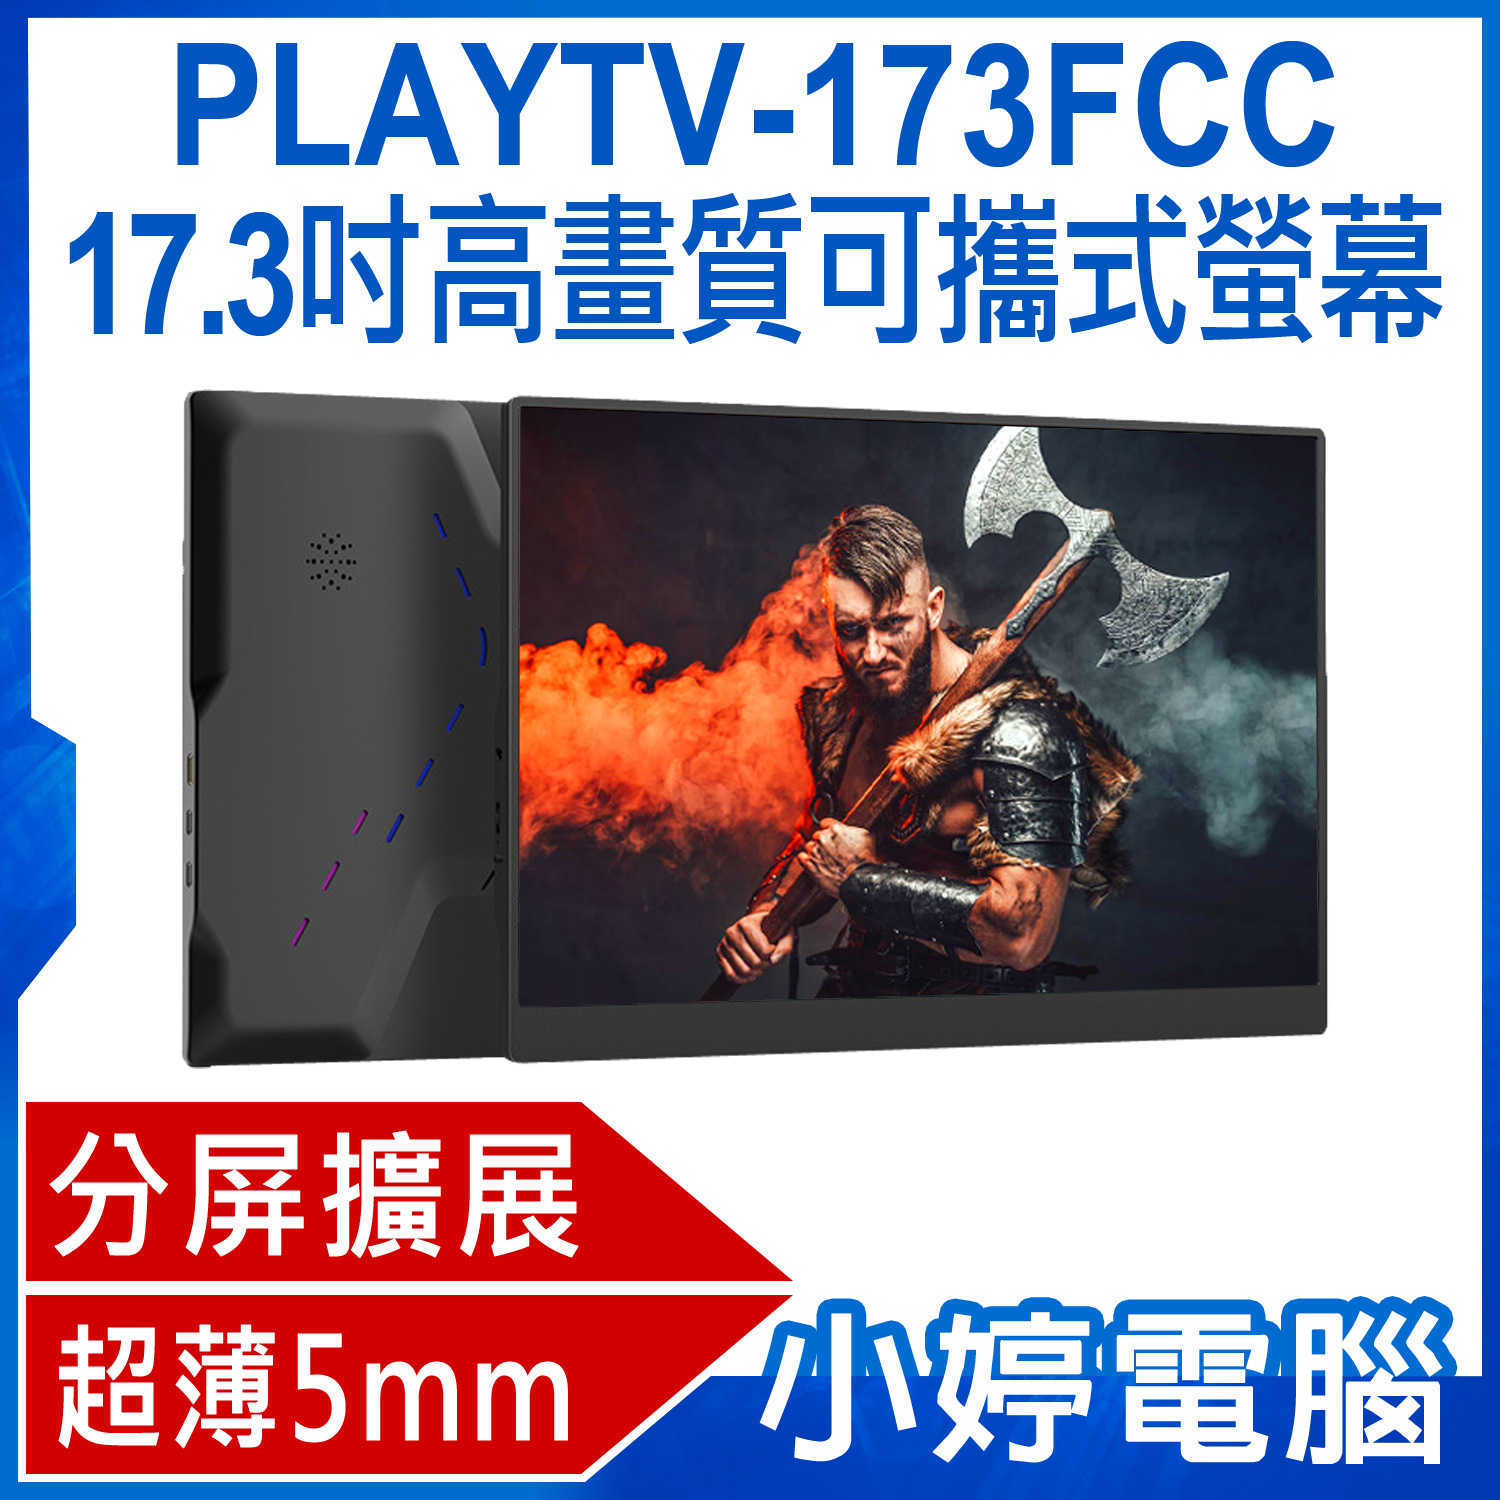 【小婷電腦】贈皮套 PLAYTV-173FCC 17.3吋高畫質可攜式螢幕 分屏擴展 5mm超薄機身 IPS螢幕